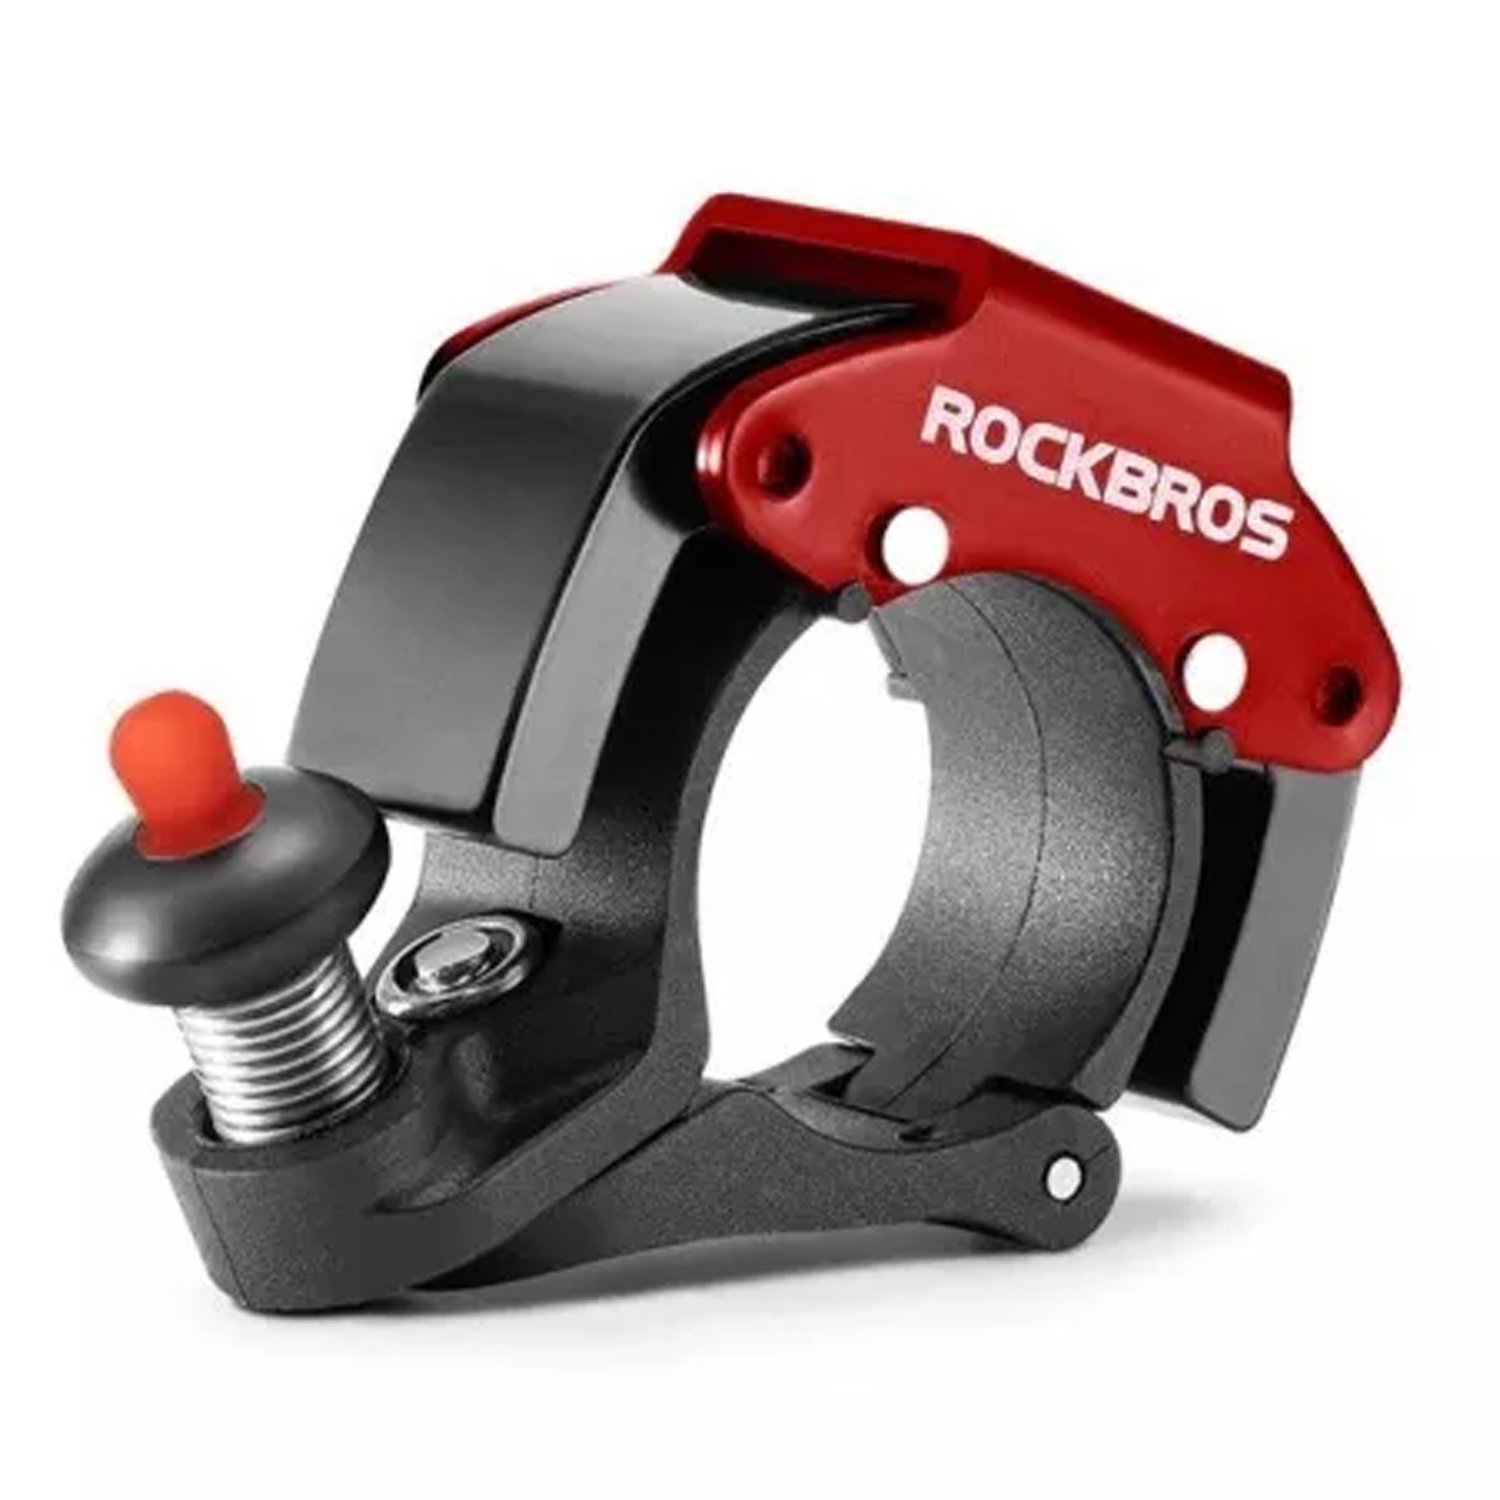 Звонок велосипедный ROCKBROS, D22.2 мм, черный с красным, RB_34210009001 велофонарь rockbros двойное мигание красным или белым usb rb pt 6005